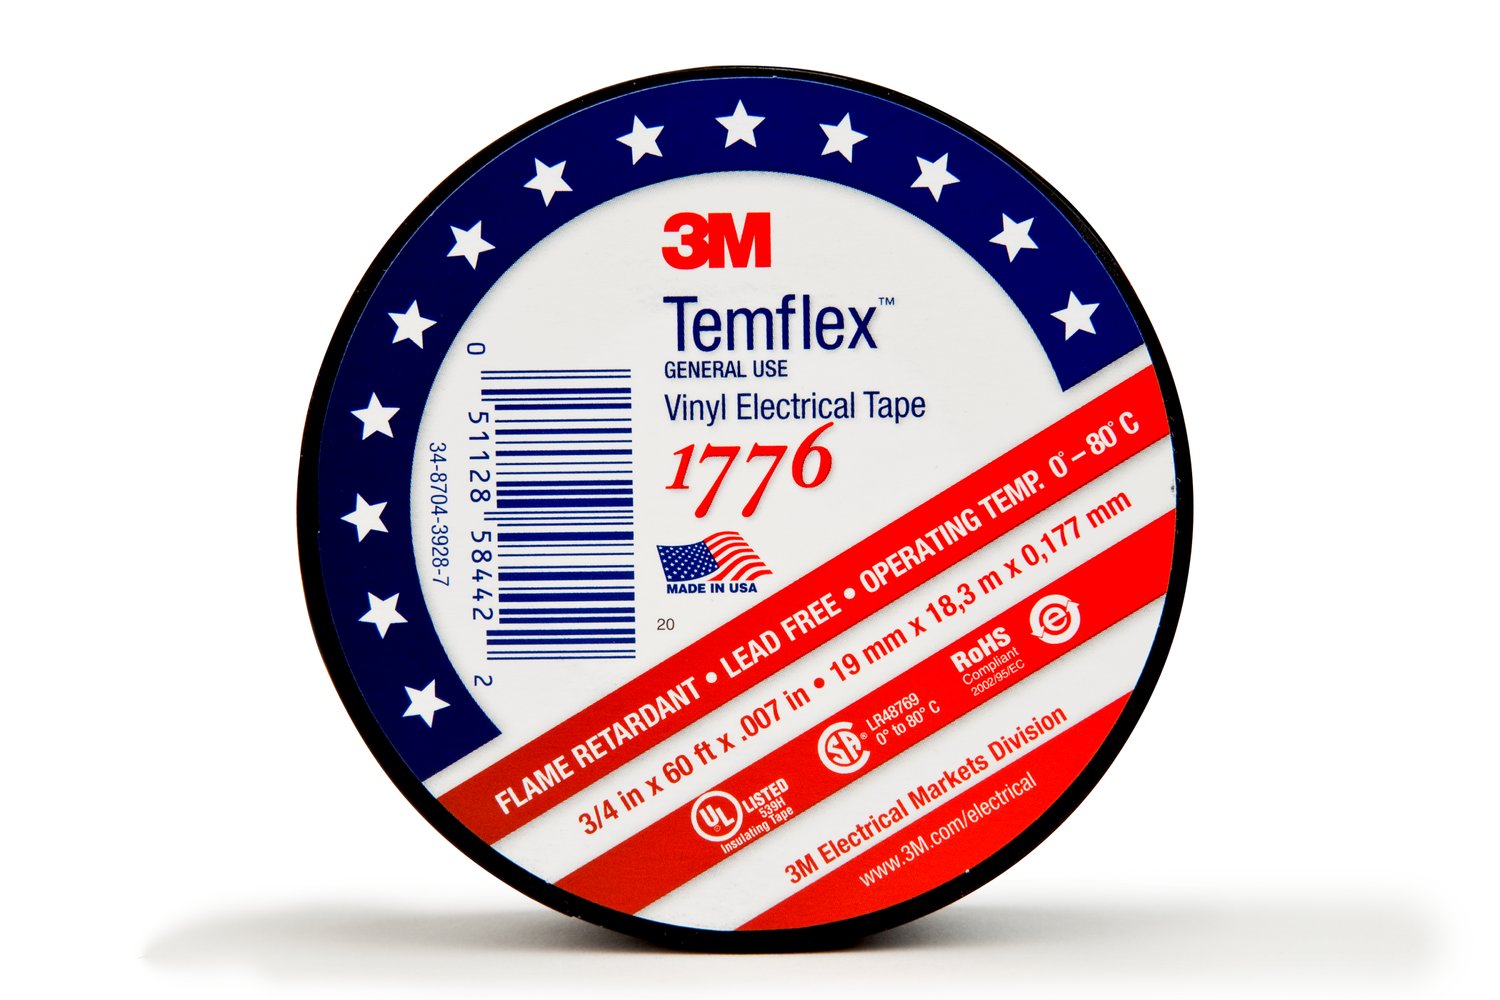 7010398066 - 3M Temflex Vinyl Electrical Tape 1776, 3/4 in x ?60 ft, 1-1/2 in Core,
Black, 1 roll/carton, 100 rolls/Case